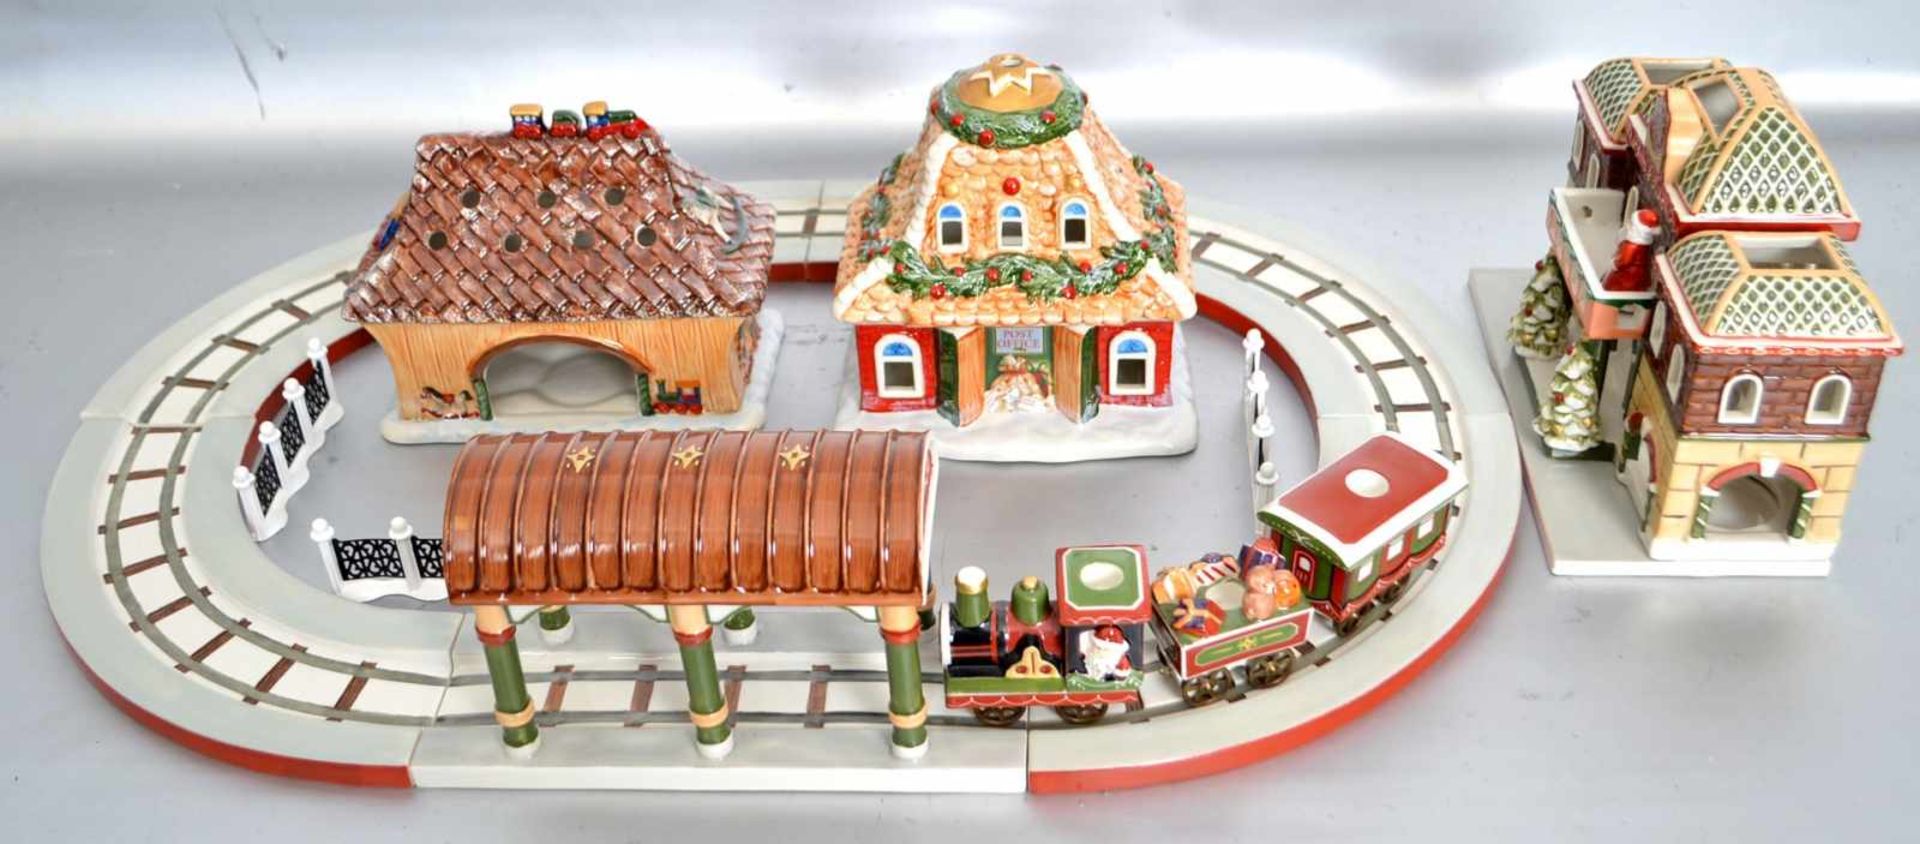 Eisenbahnmit Schienen, drei Häusern, Bahnhof und Zubehör, mit Weihnachtsmotiven verziert, bunt